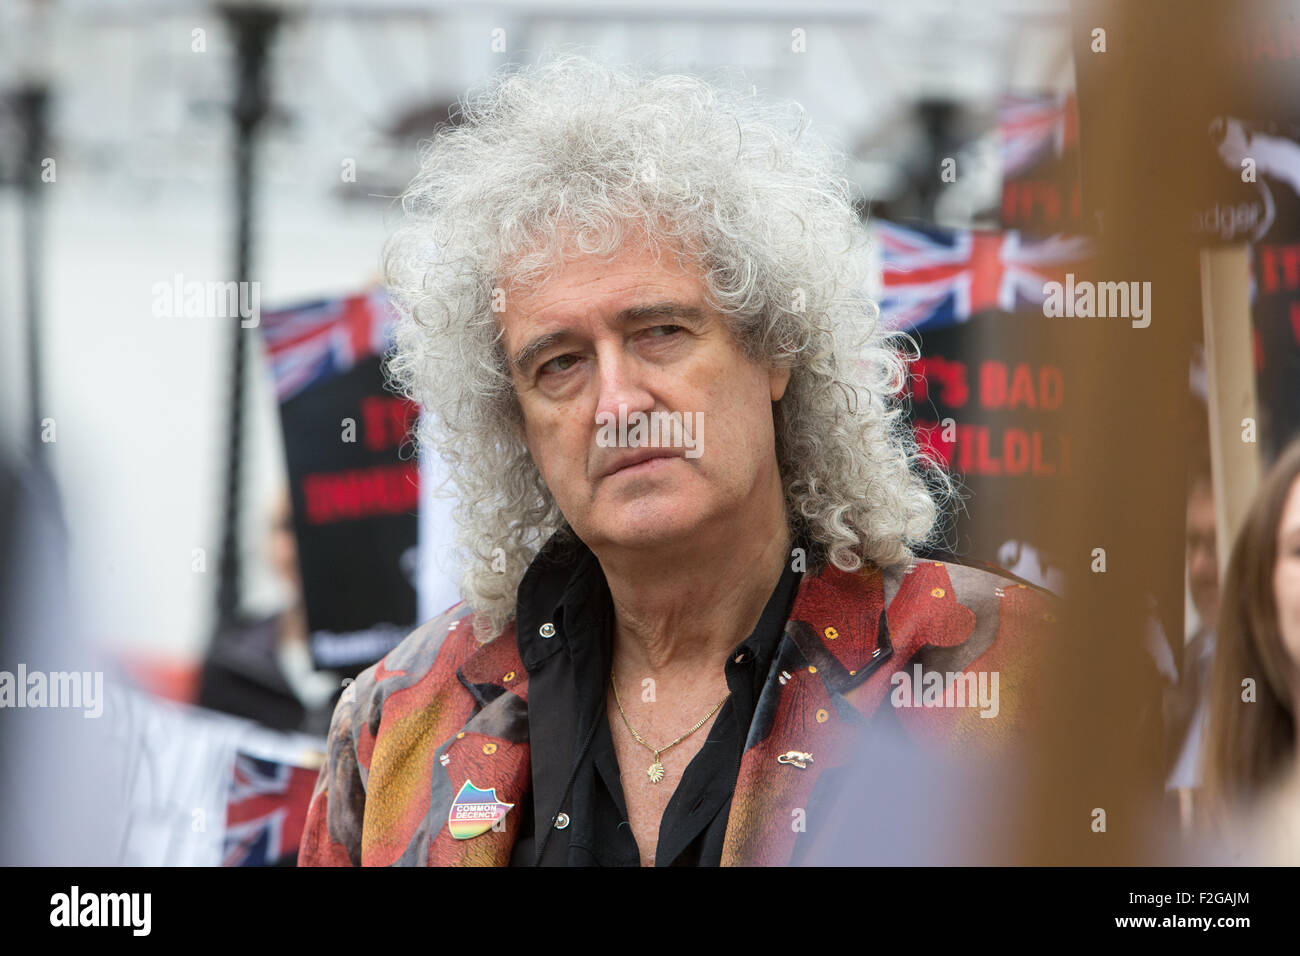 Brian führt May, Lead-Gitarrist bei der Rockband Queen, eine Demonstration gegen den Dachs cull.2263, Dachse gekeult wurden Stockfoto